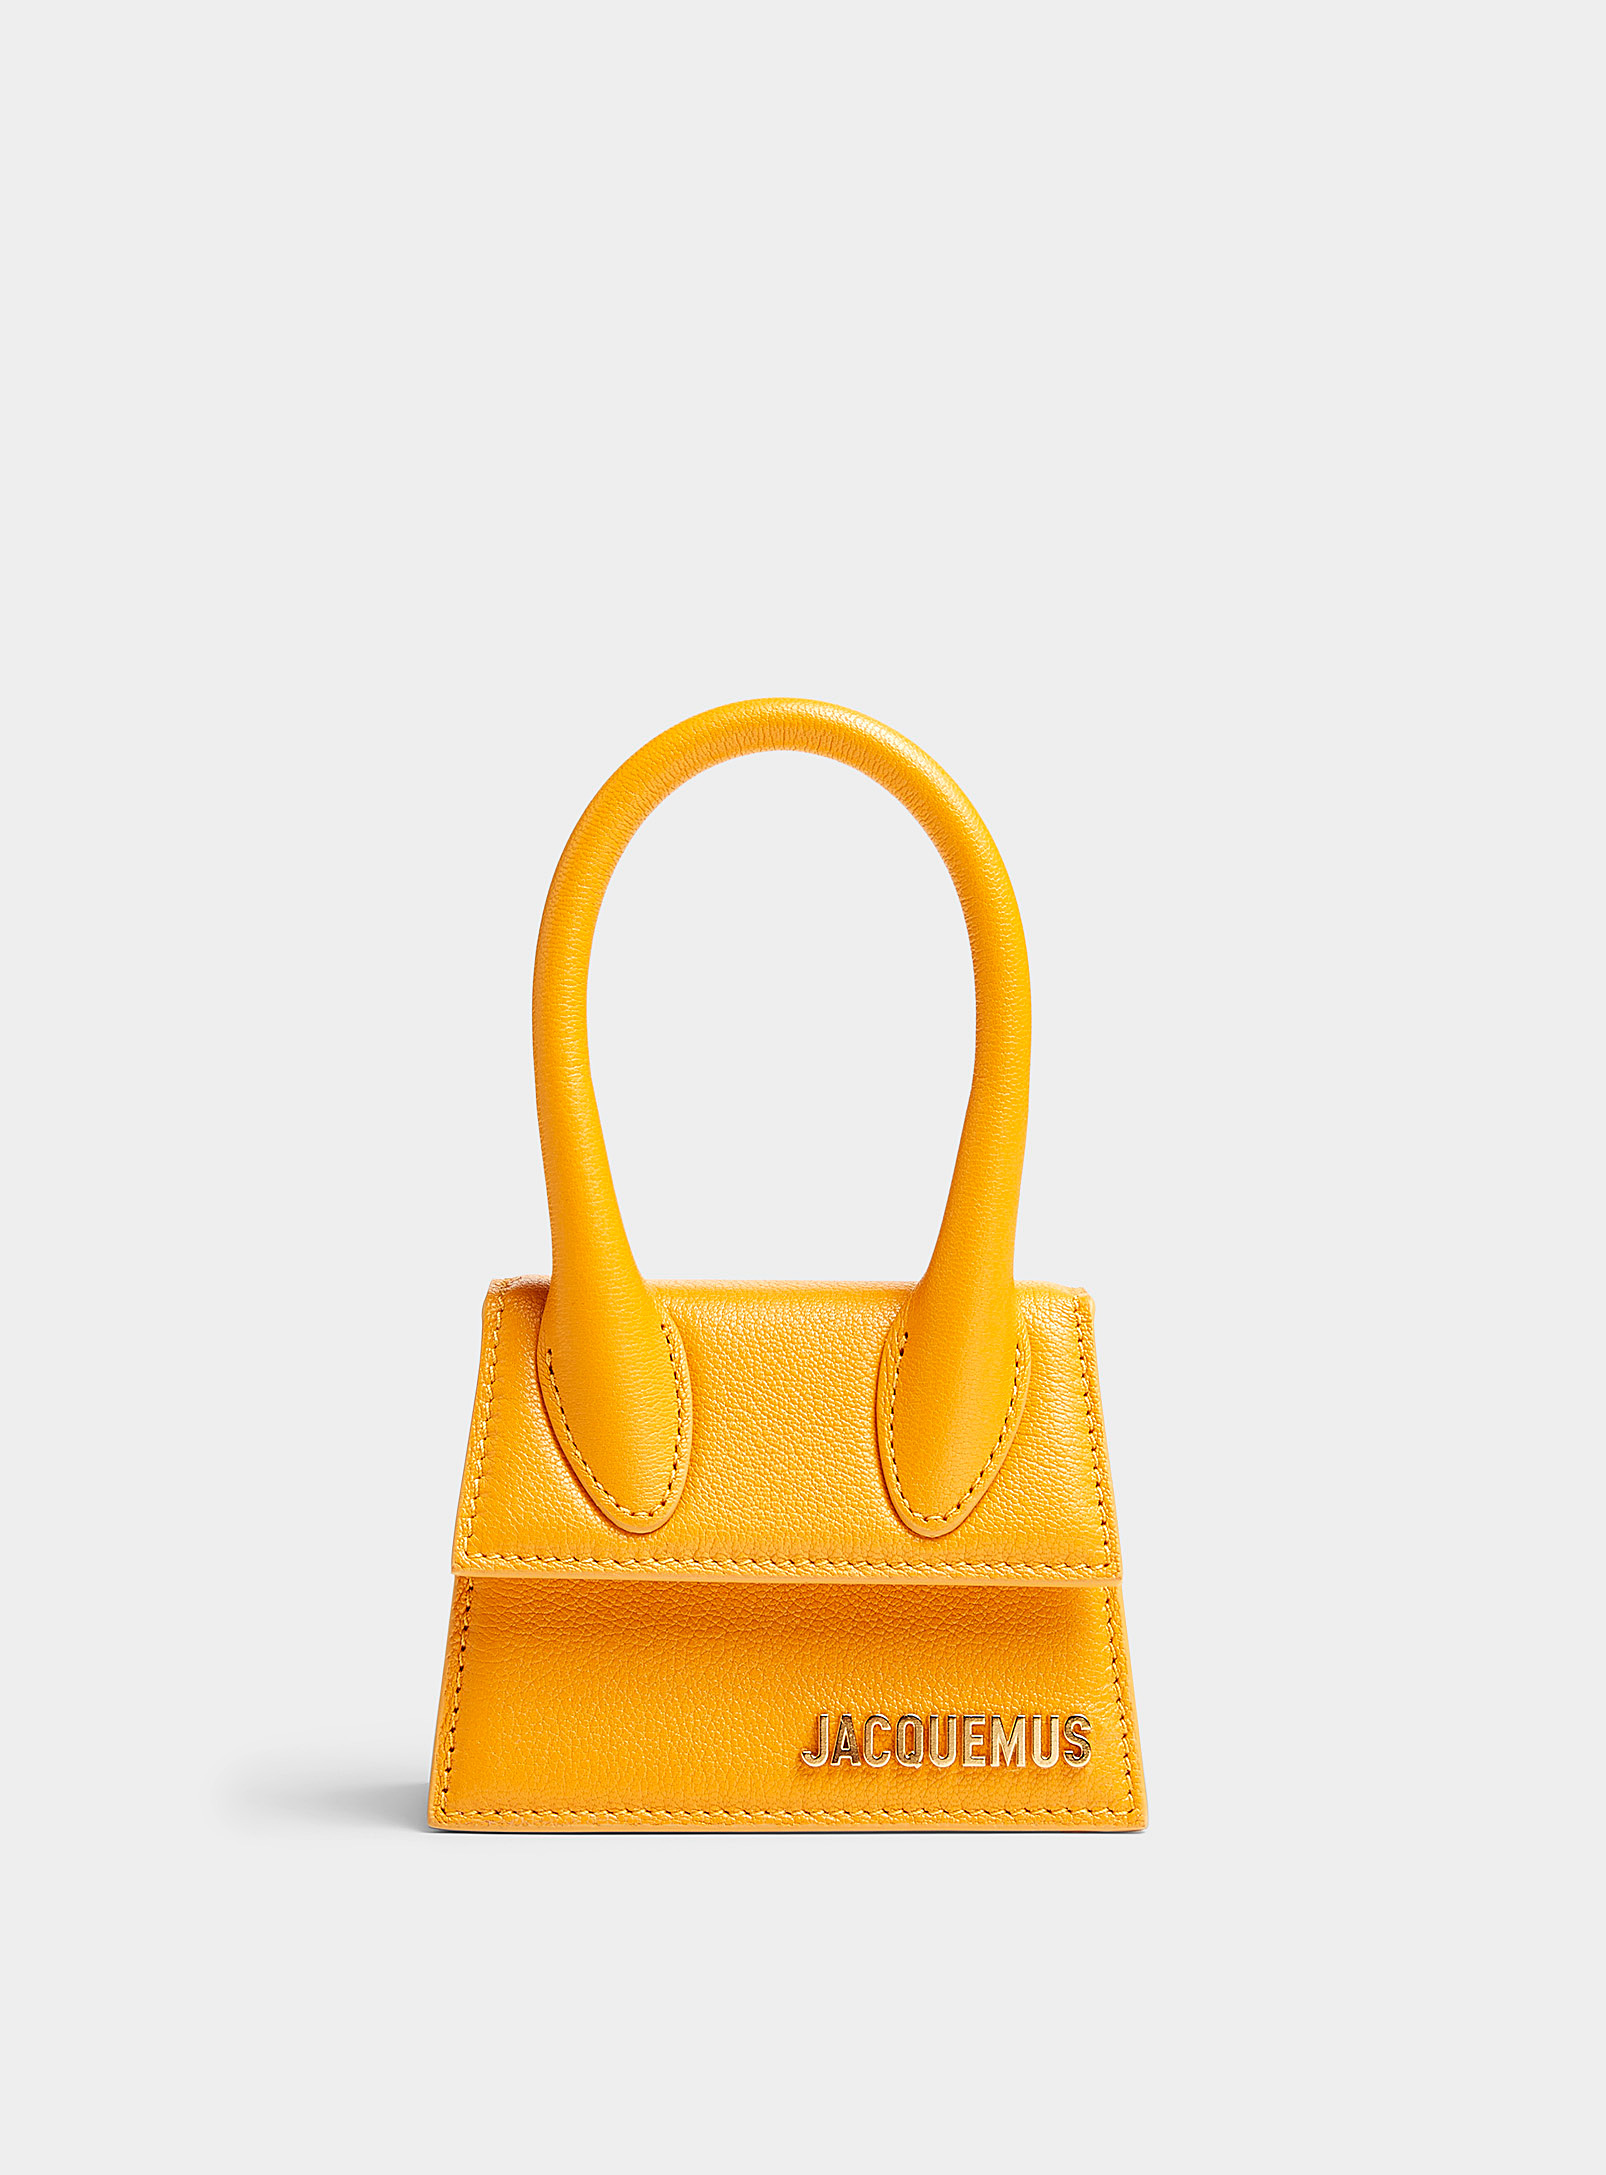 Jacquemus - Women's Chiquito orange mini bag